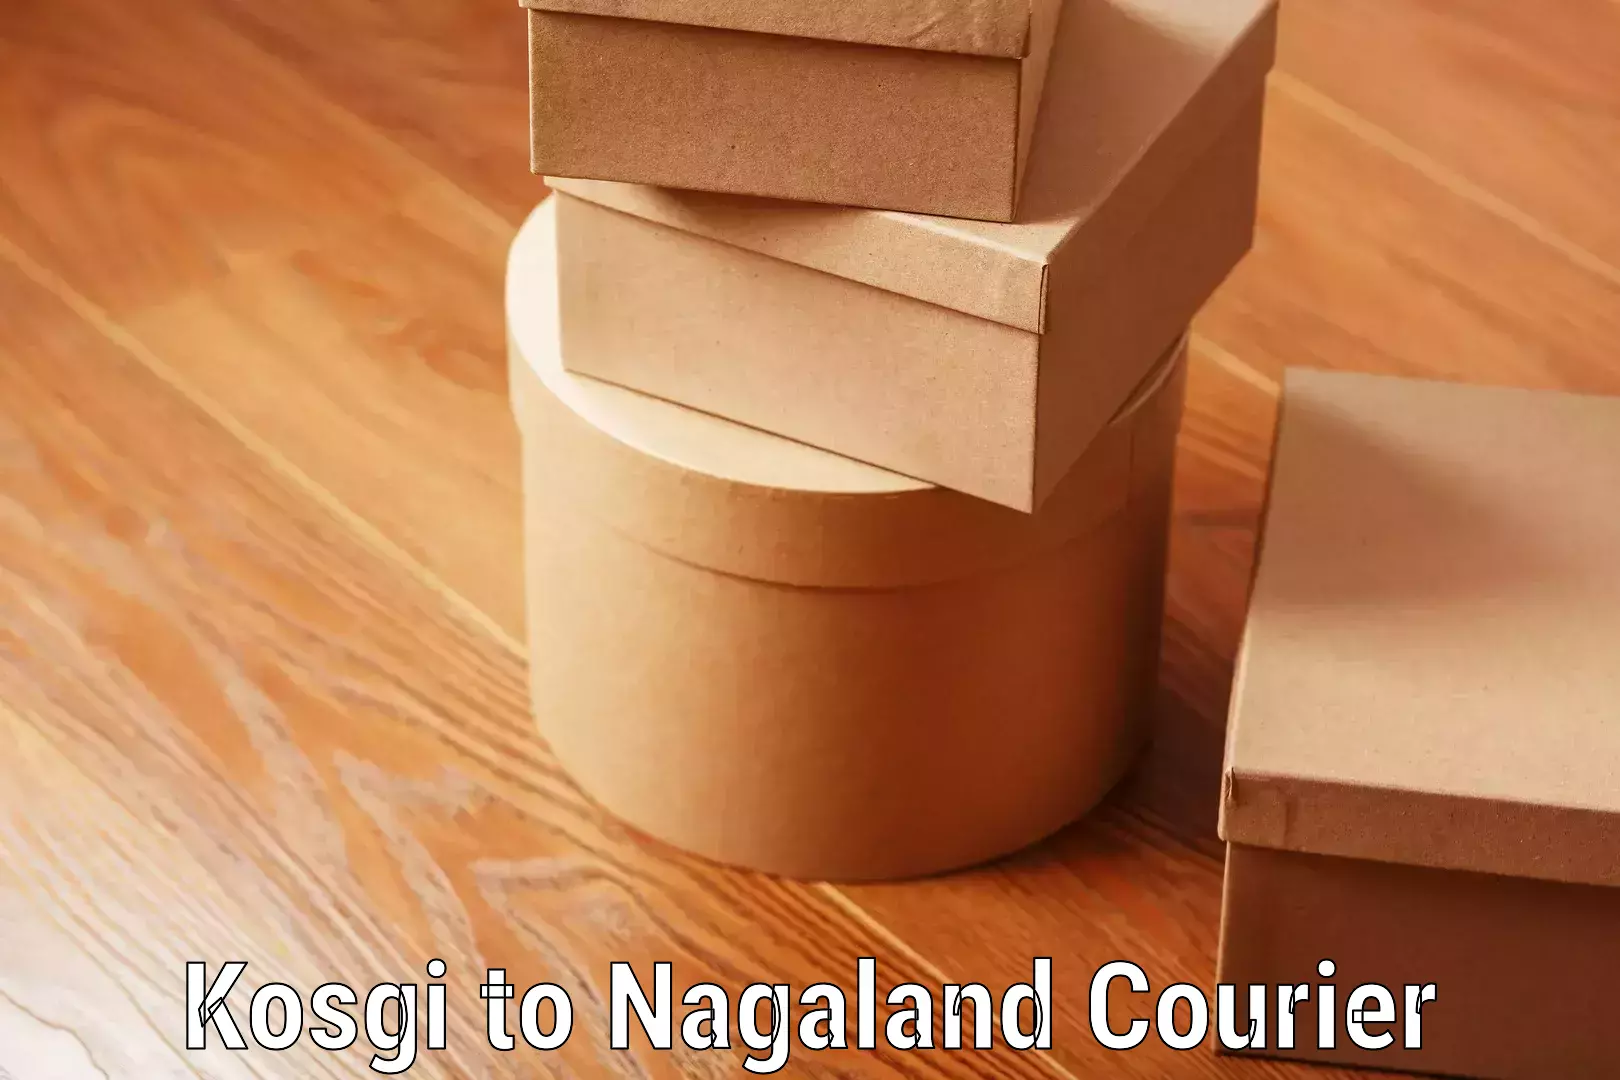 Customized luggage delivery Kosgi to Nagaland